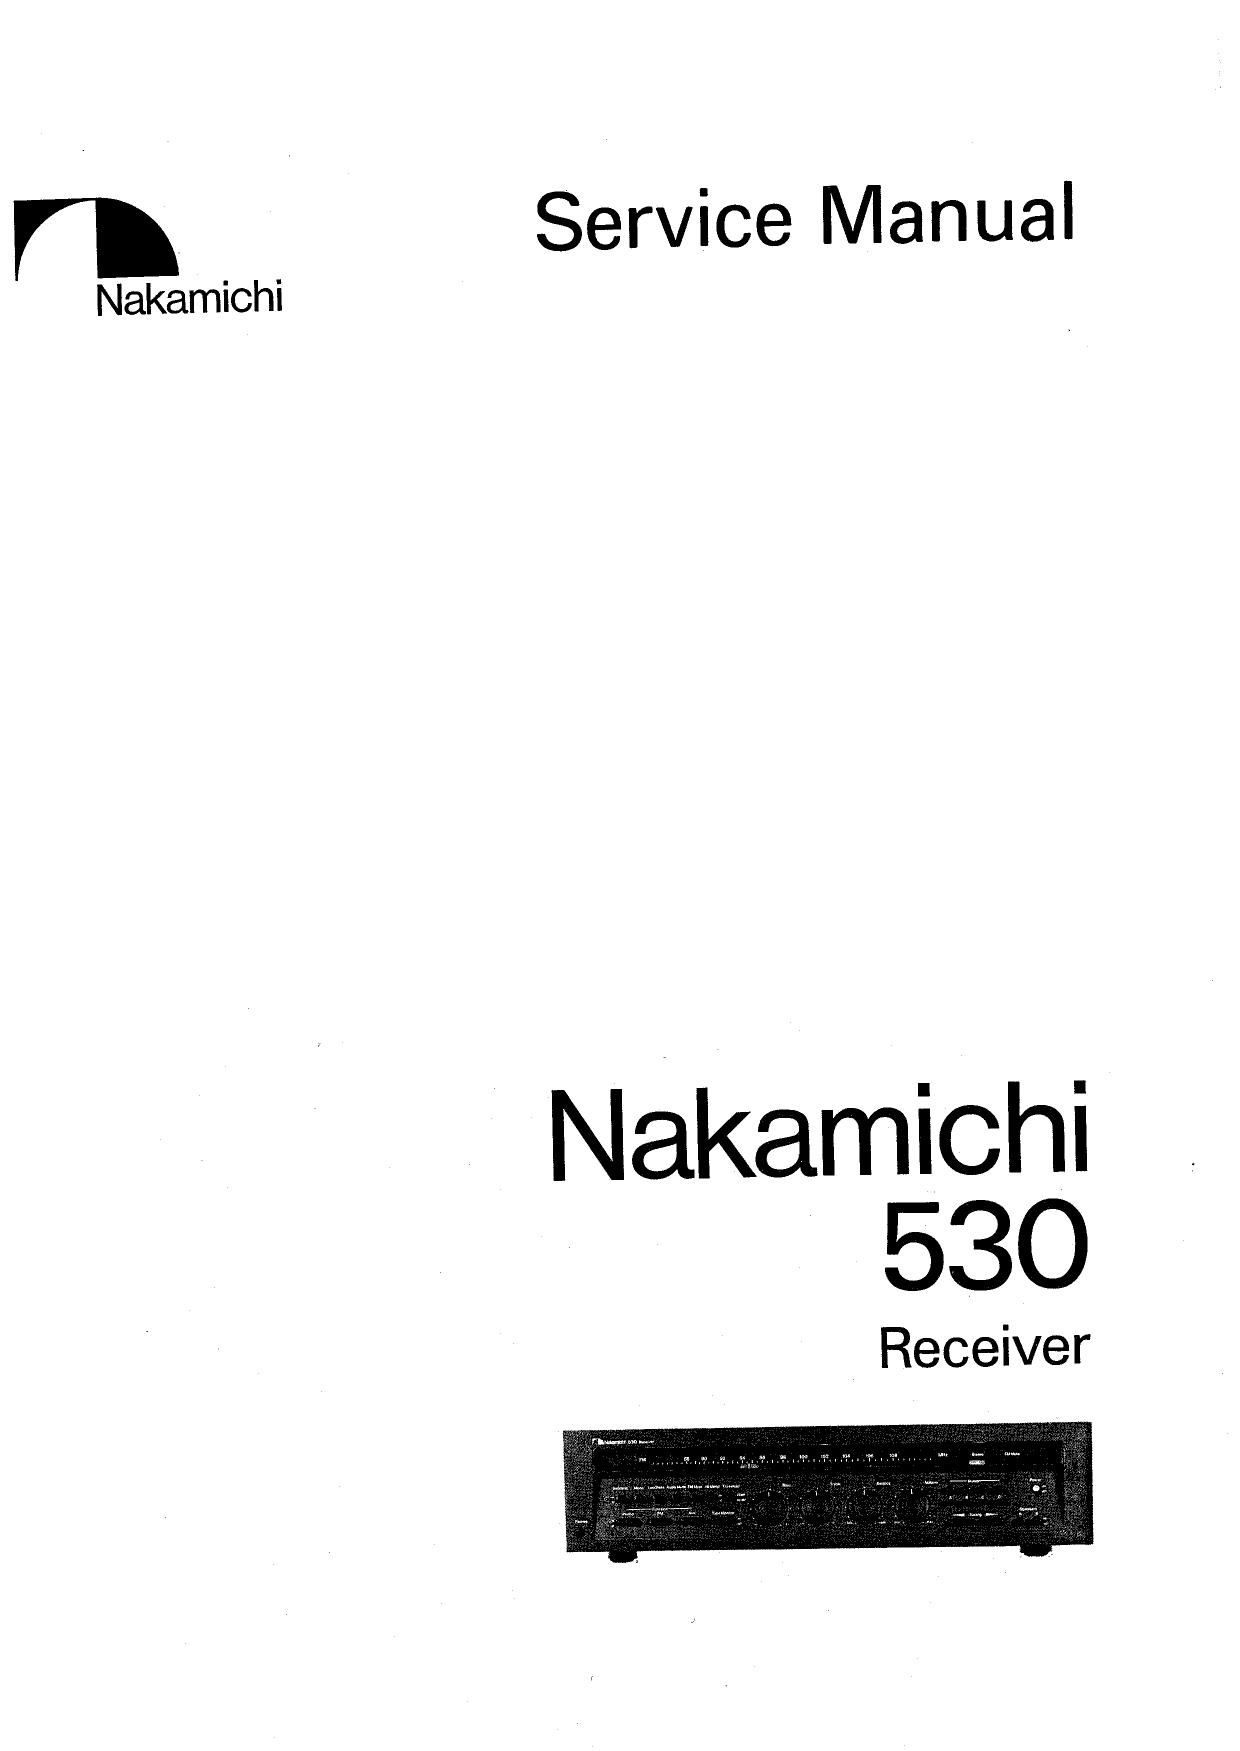 Nakamichi 530 Service Manual